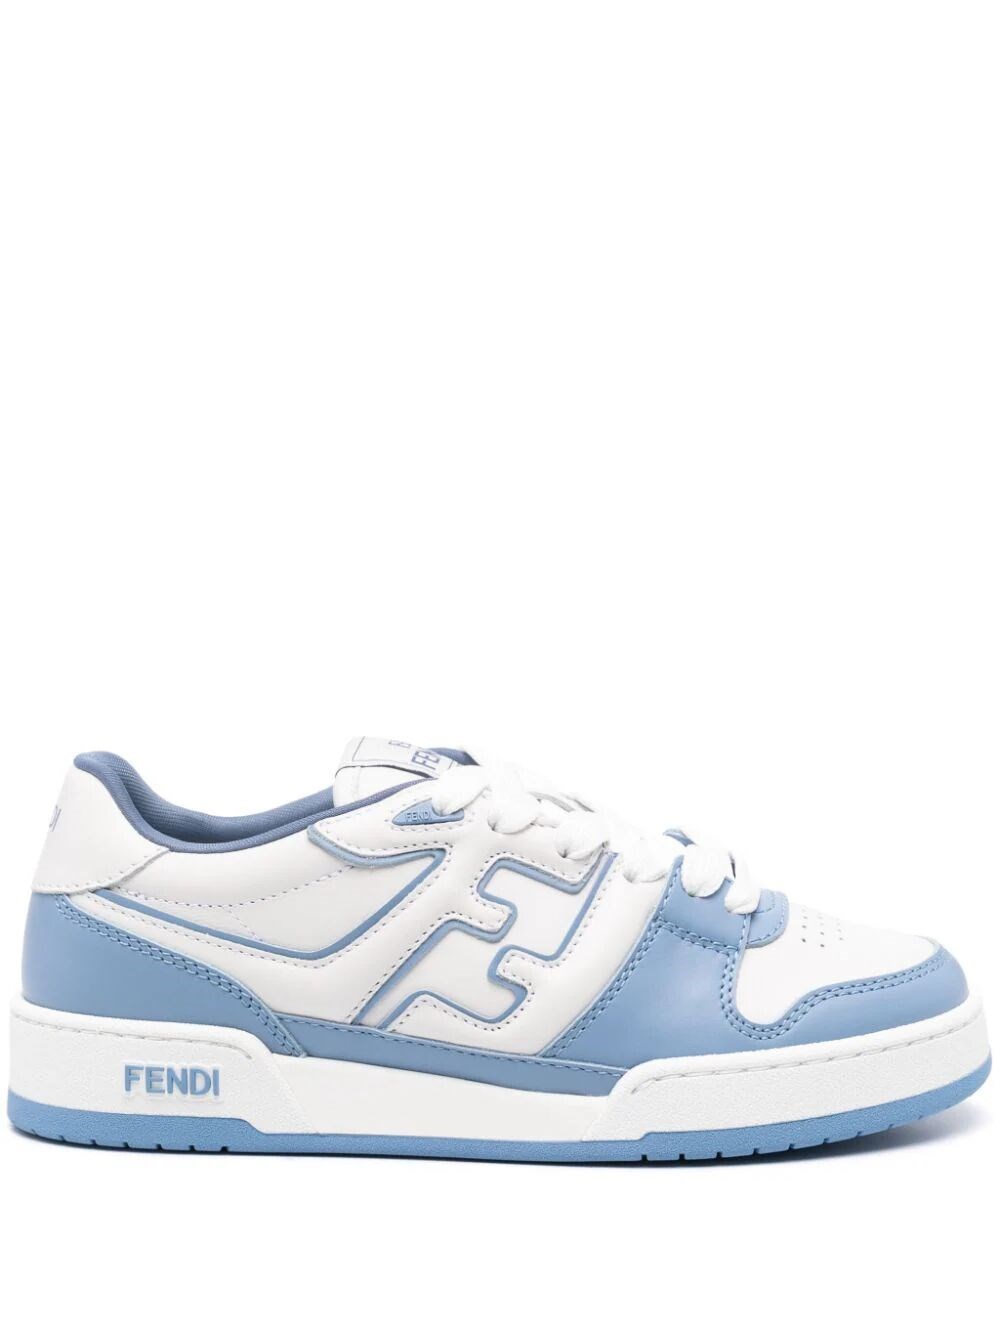 Fendi Match Sneakers In Blue